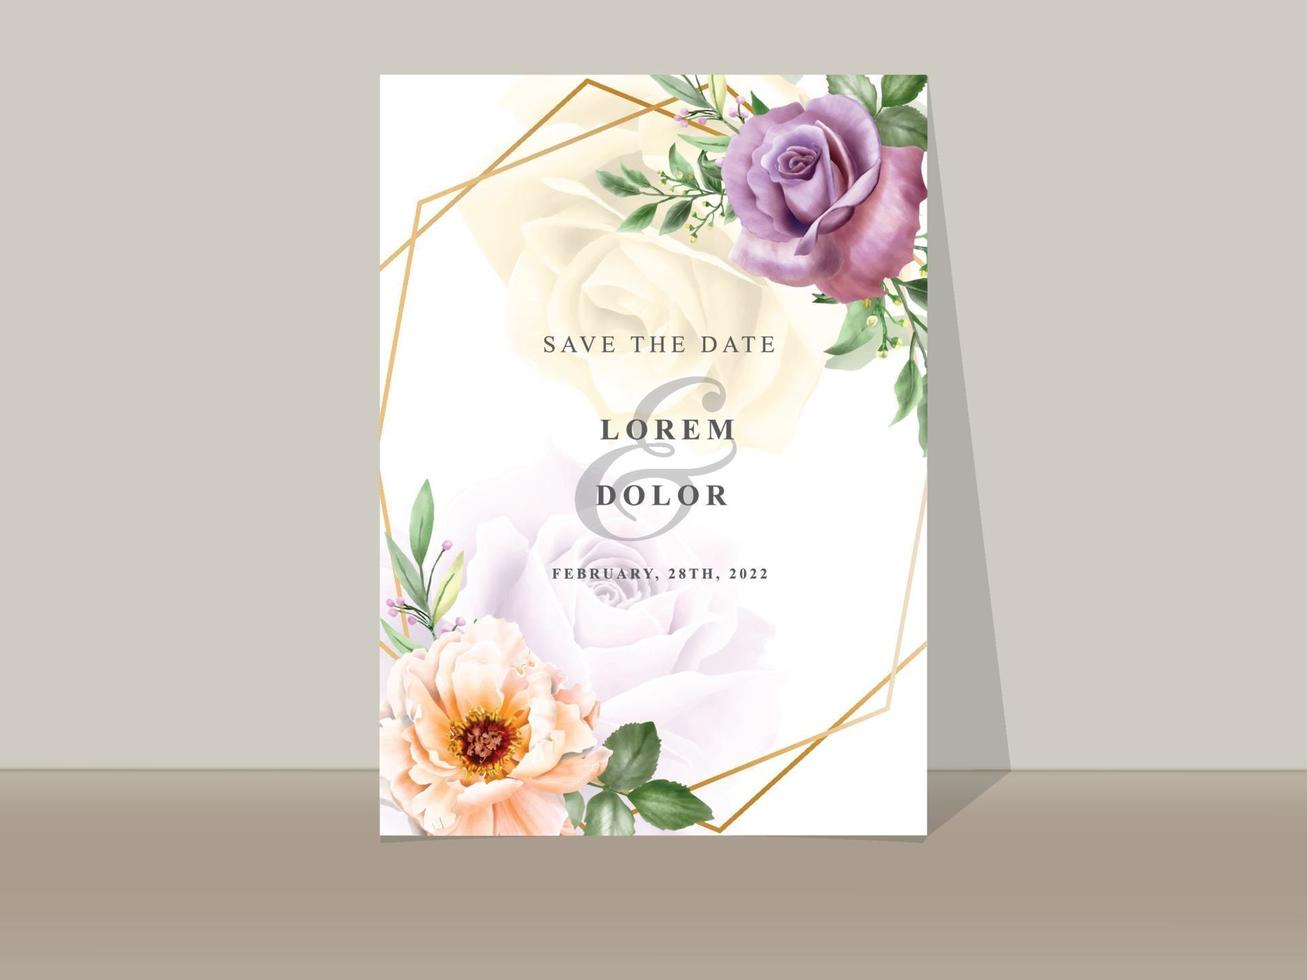 modelo de convites de casamento floral romântico desenhado à mão vetor